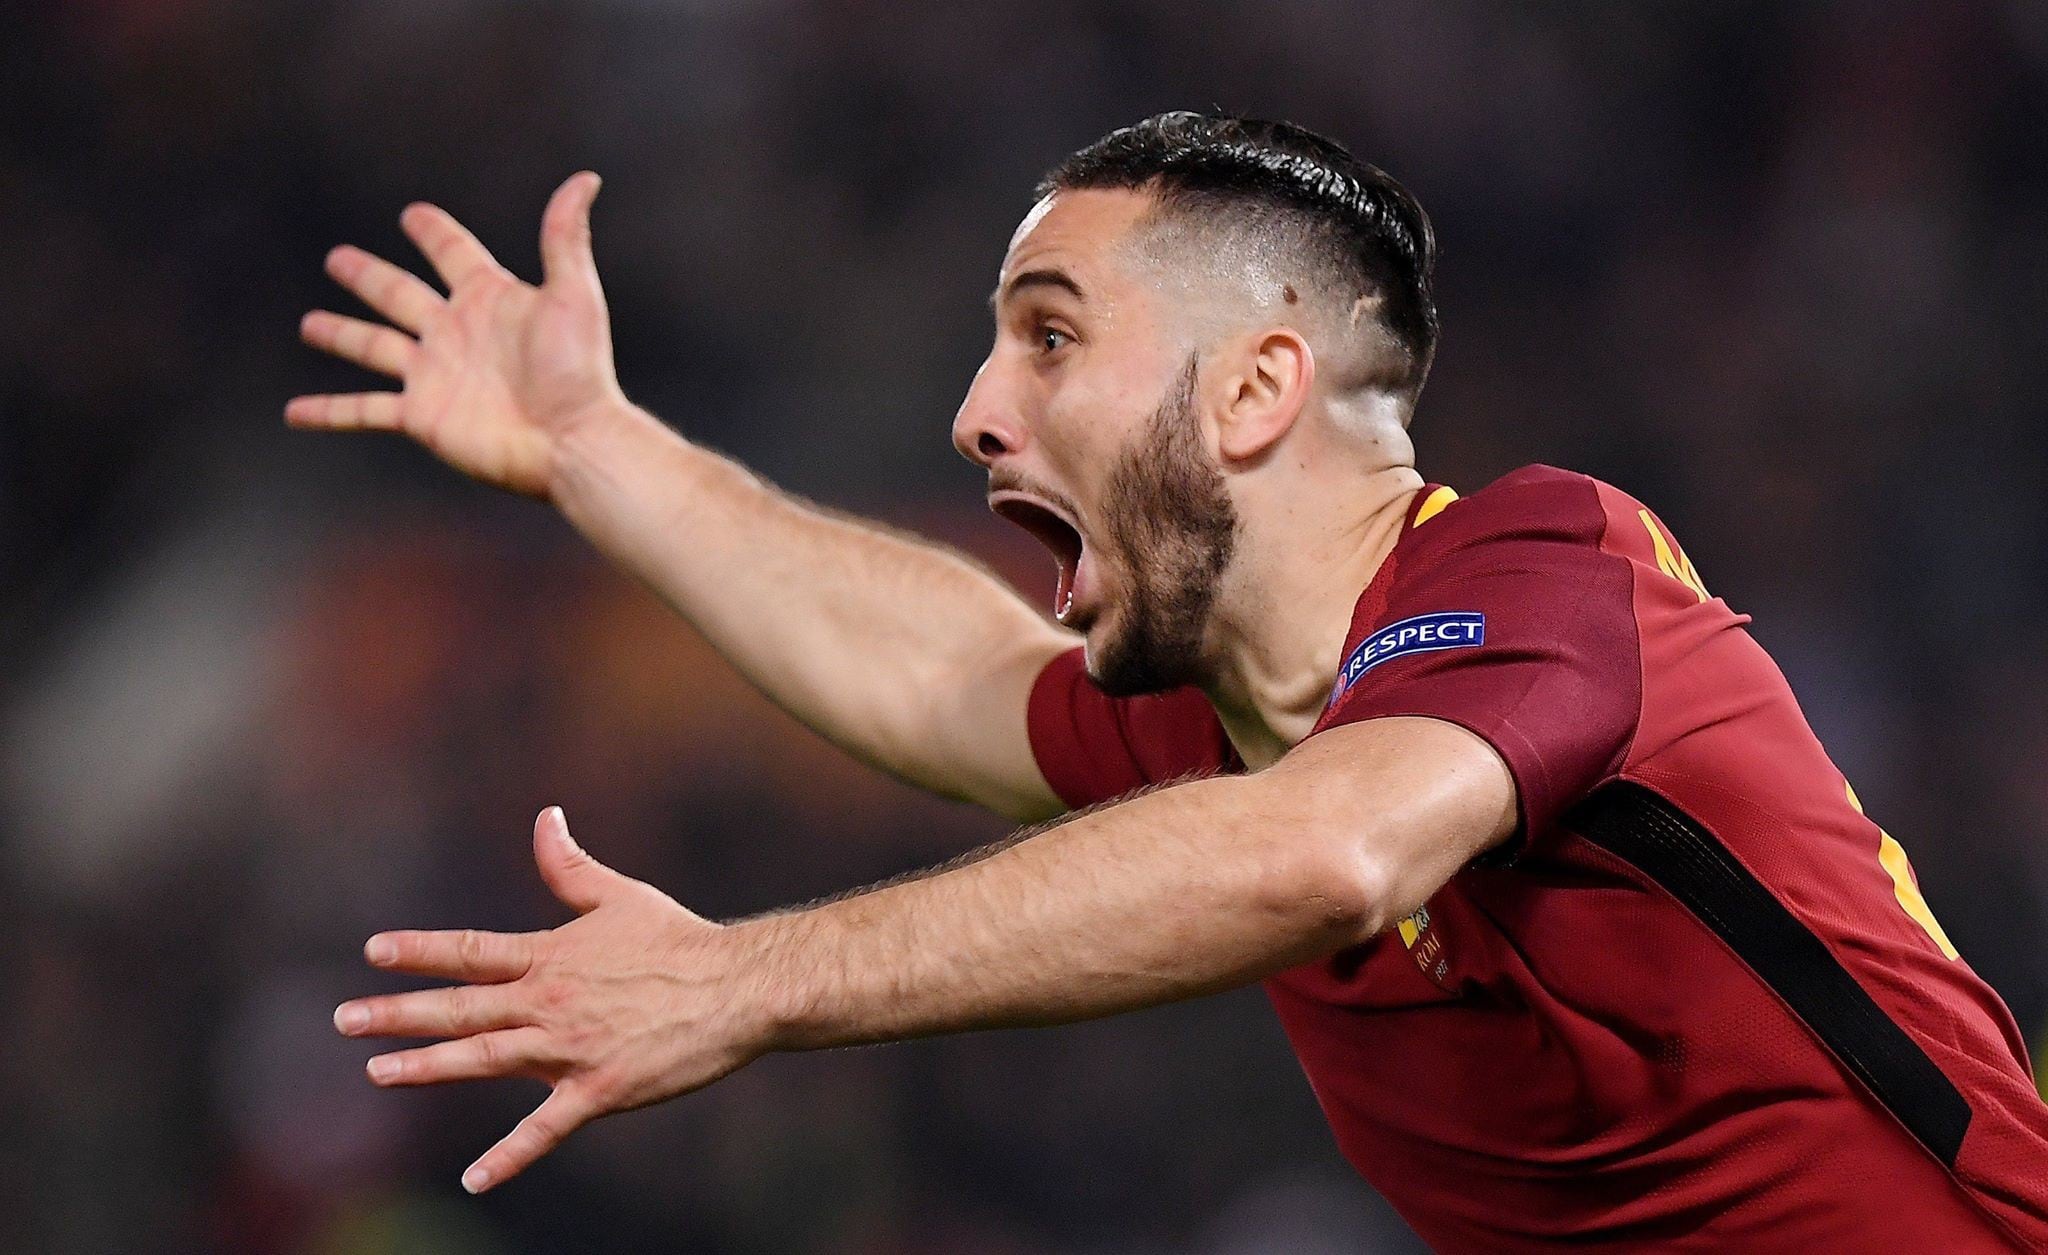 La Roma dio la gran sorpresa de los cuartos de final de la Champions League al derrotar al Barcelona por 3-0